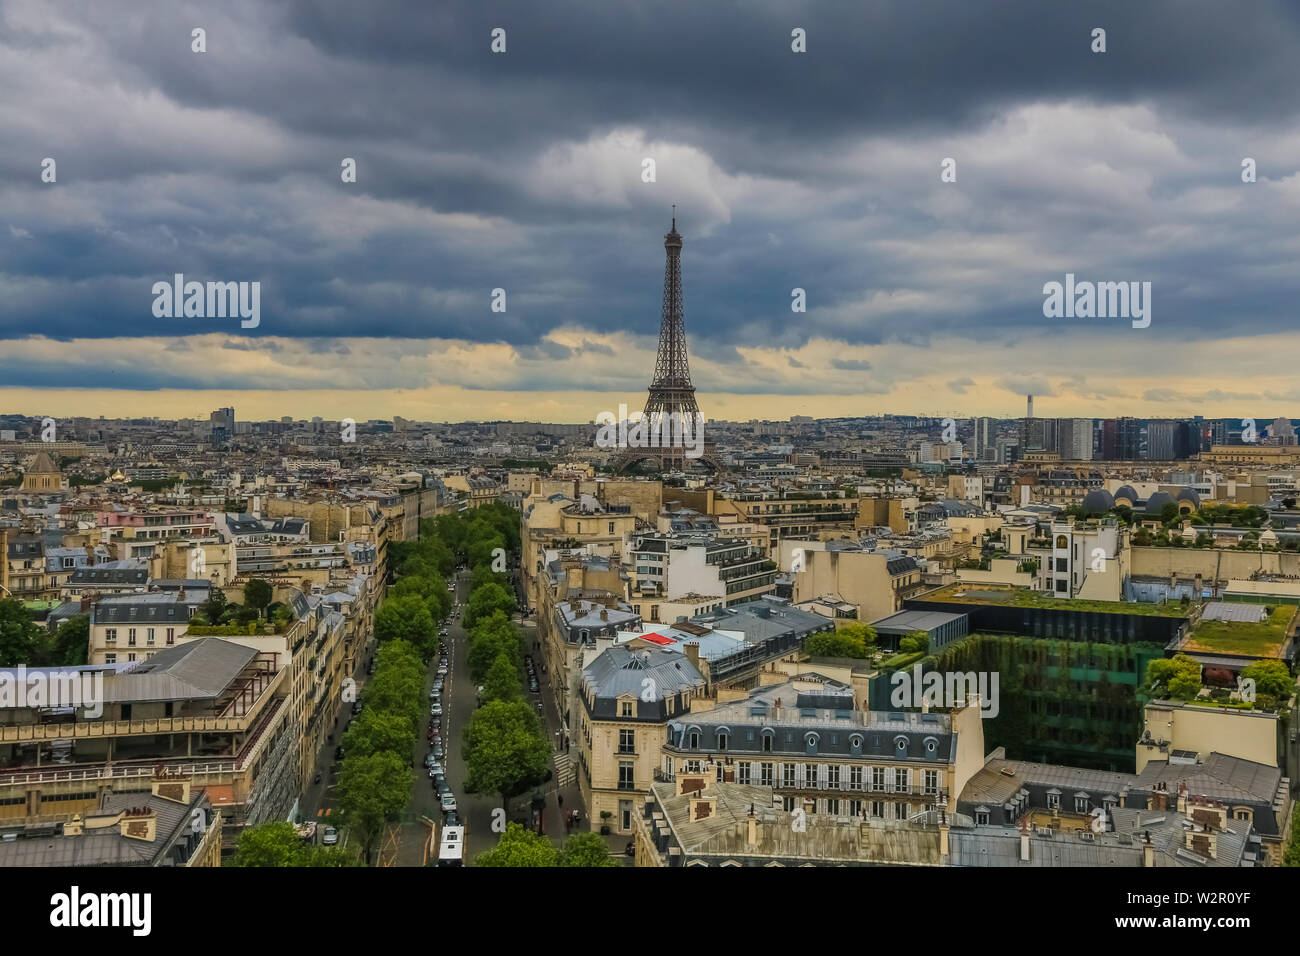 Panoramica vista aerea di Parigi con il famoso e iconico della Torre Eiffel nel centro e il viale d'Iéna portando al Trocadéro in un giorno nuvoloso. Foto Stock